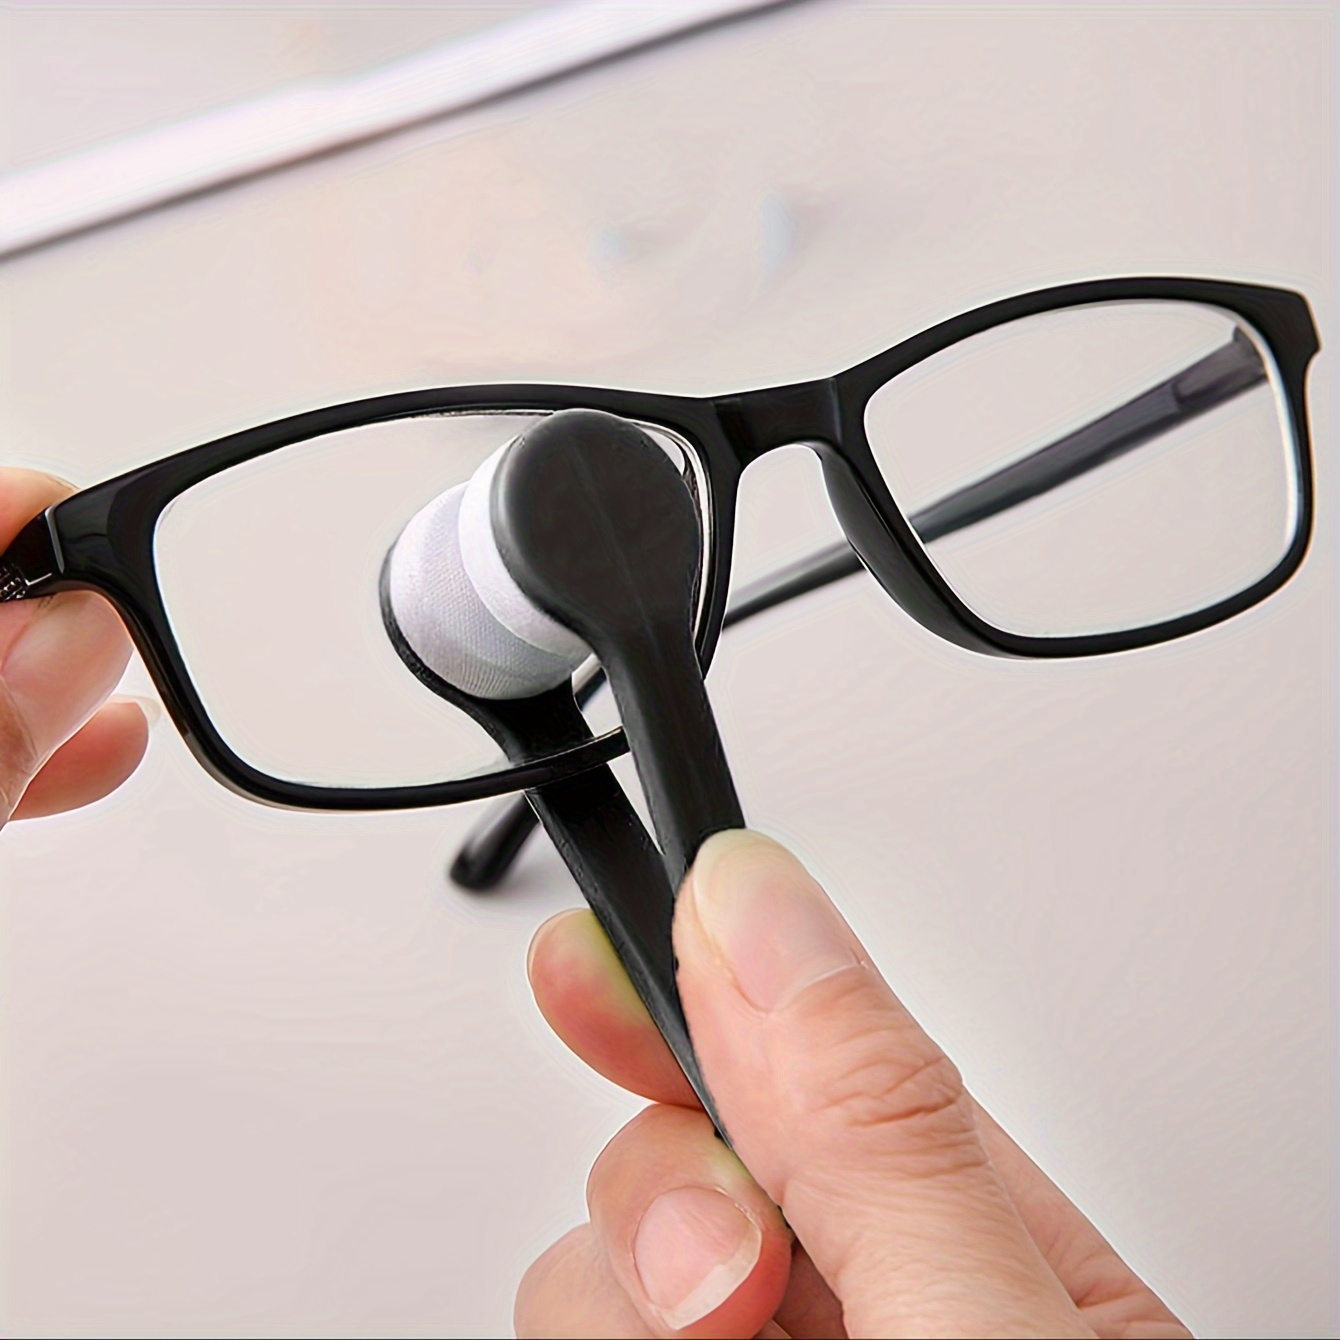 5 Pcs Eye Glasses Lens Cleaner Tool - Mini Sun Glasses Eyeglass Microfiber Spectacles Cleaner Soft Brush Cleaning Clip Kit(Color Random)